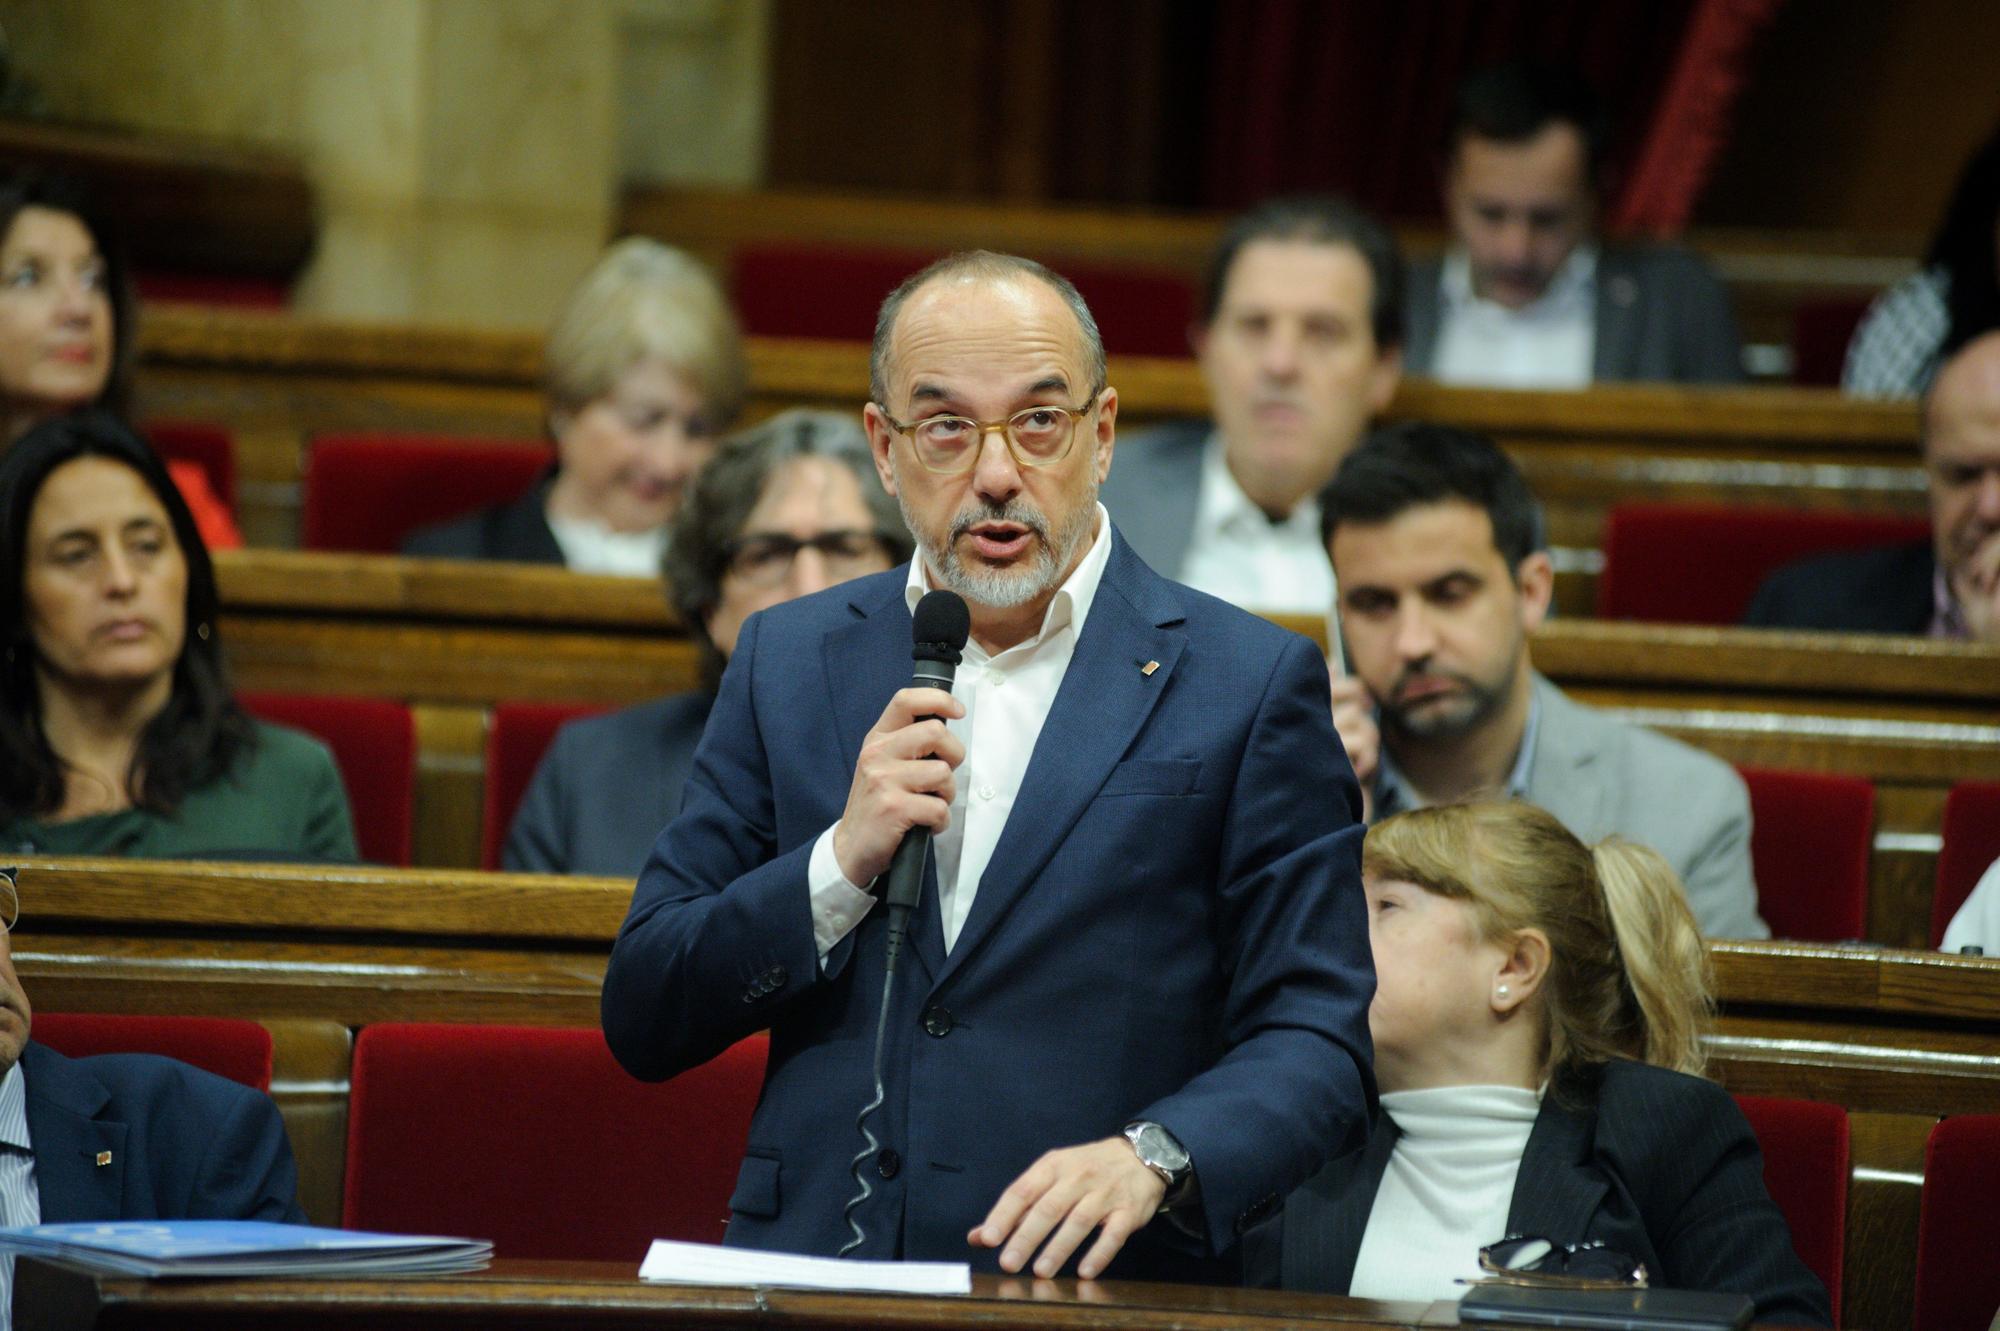 El 'conseller' de Drets Socials, Carles Campuzano, interviene durante una sesión plenaria en el Parlament, el 22 de marzo de 2023